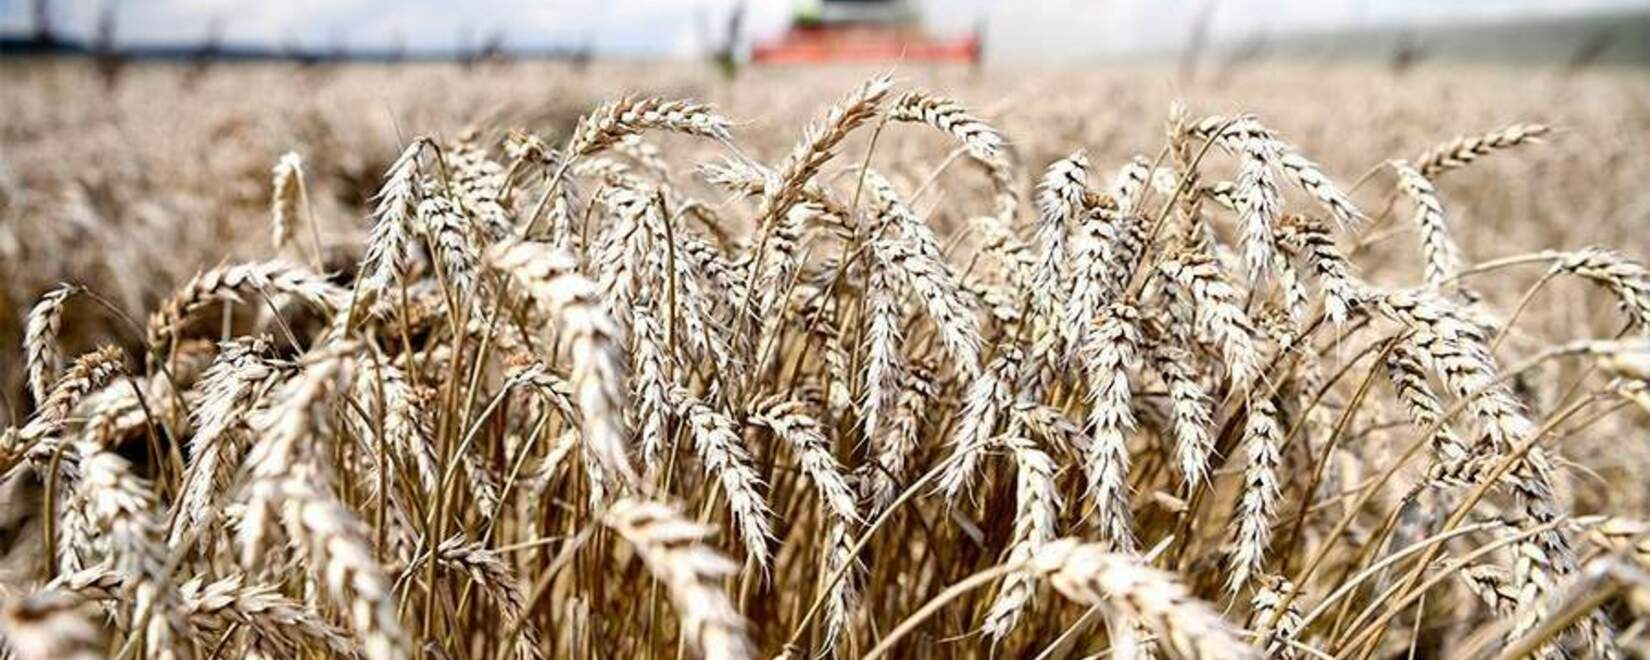 Гиббелина - серьезная угроза для пшеницы